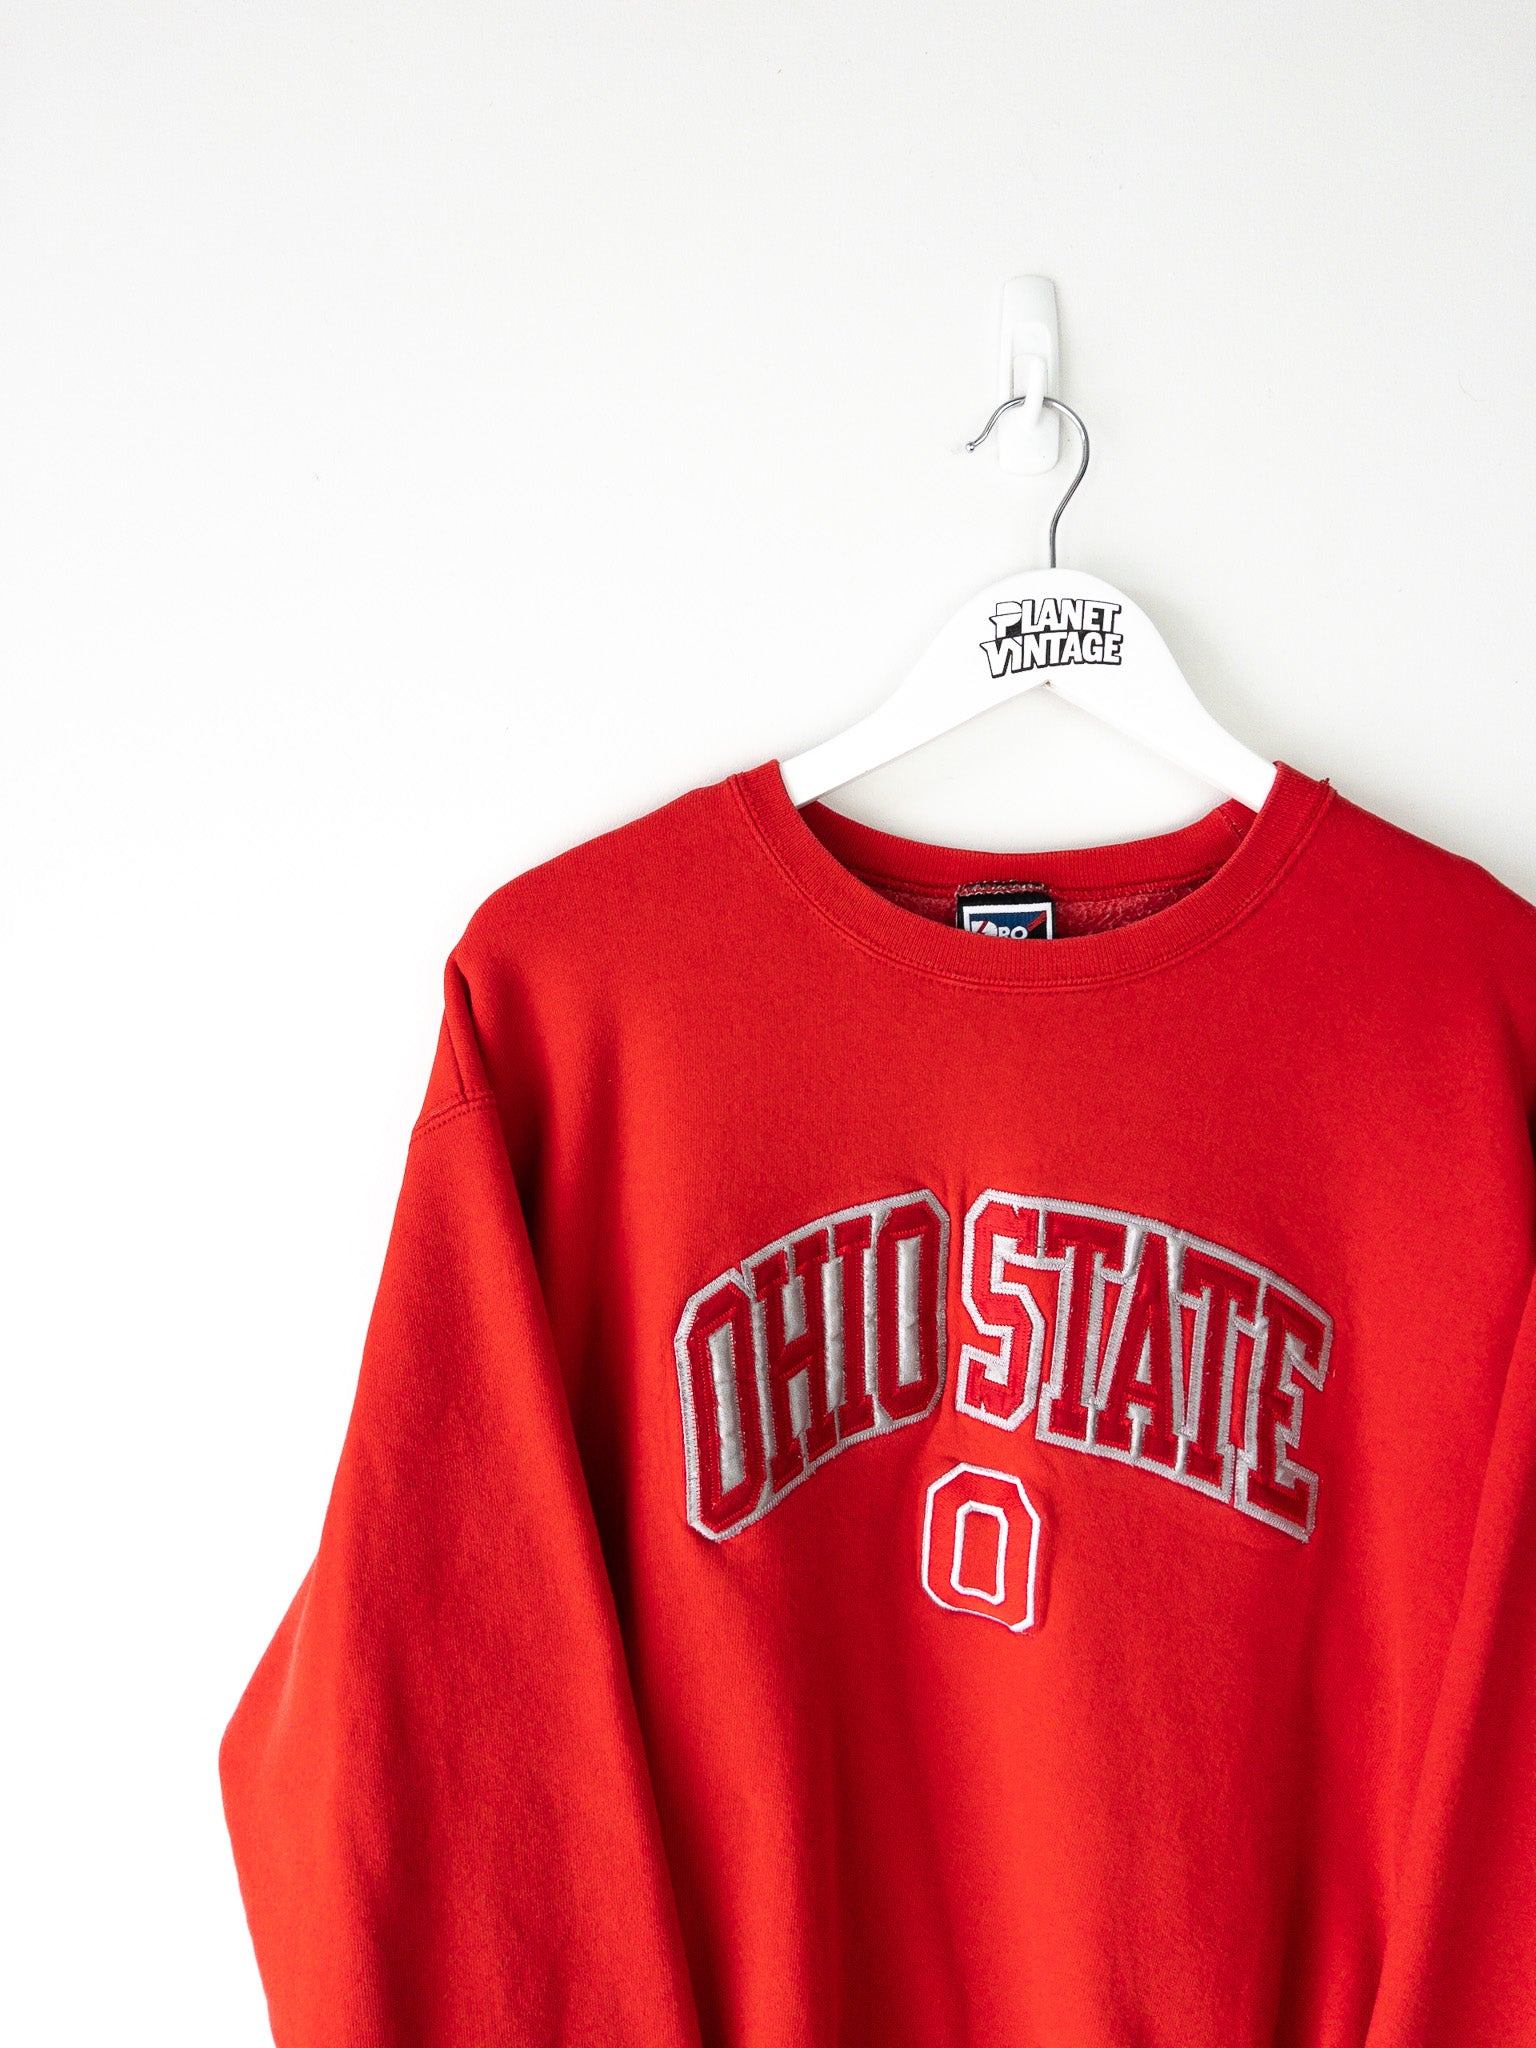 Vintage Ohio State University Sweatshirt (L)